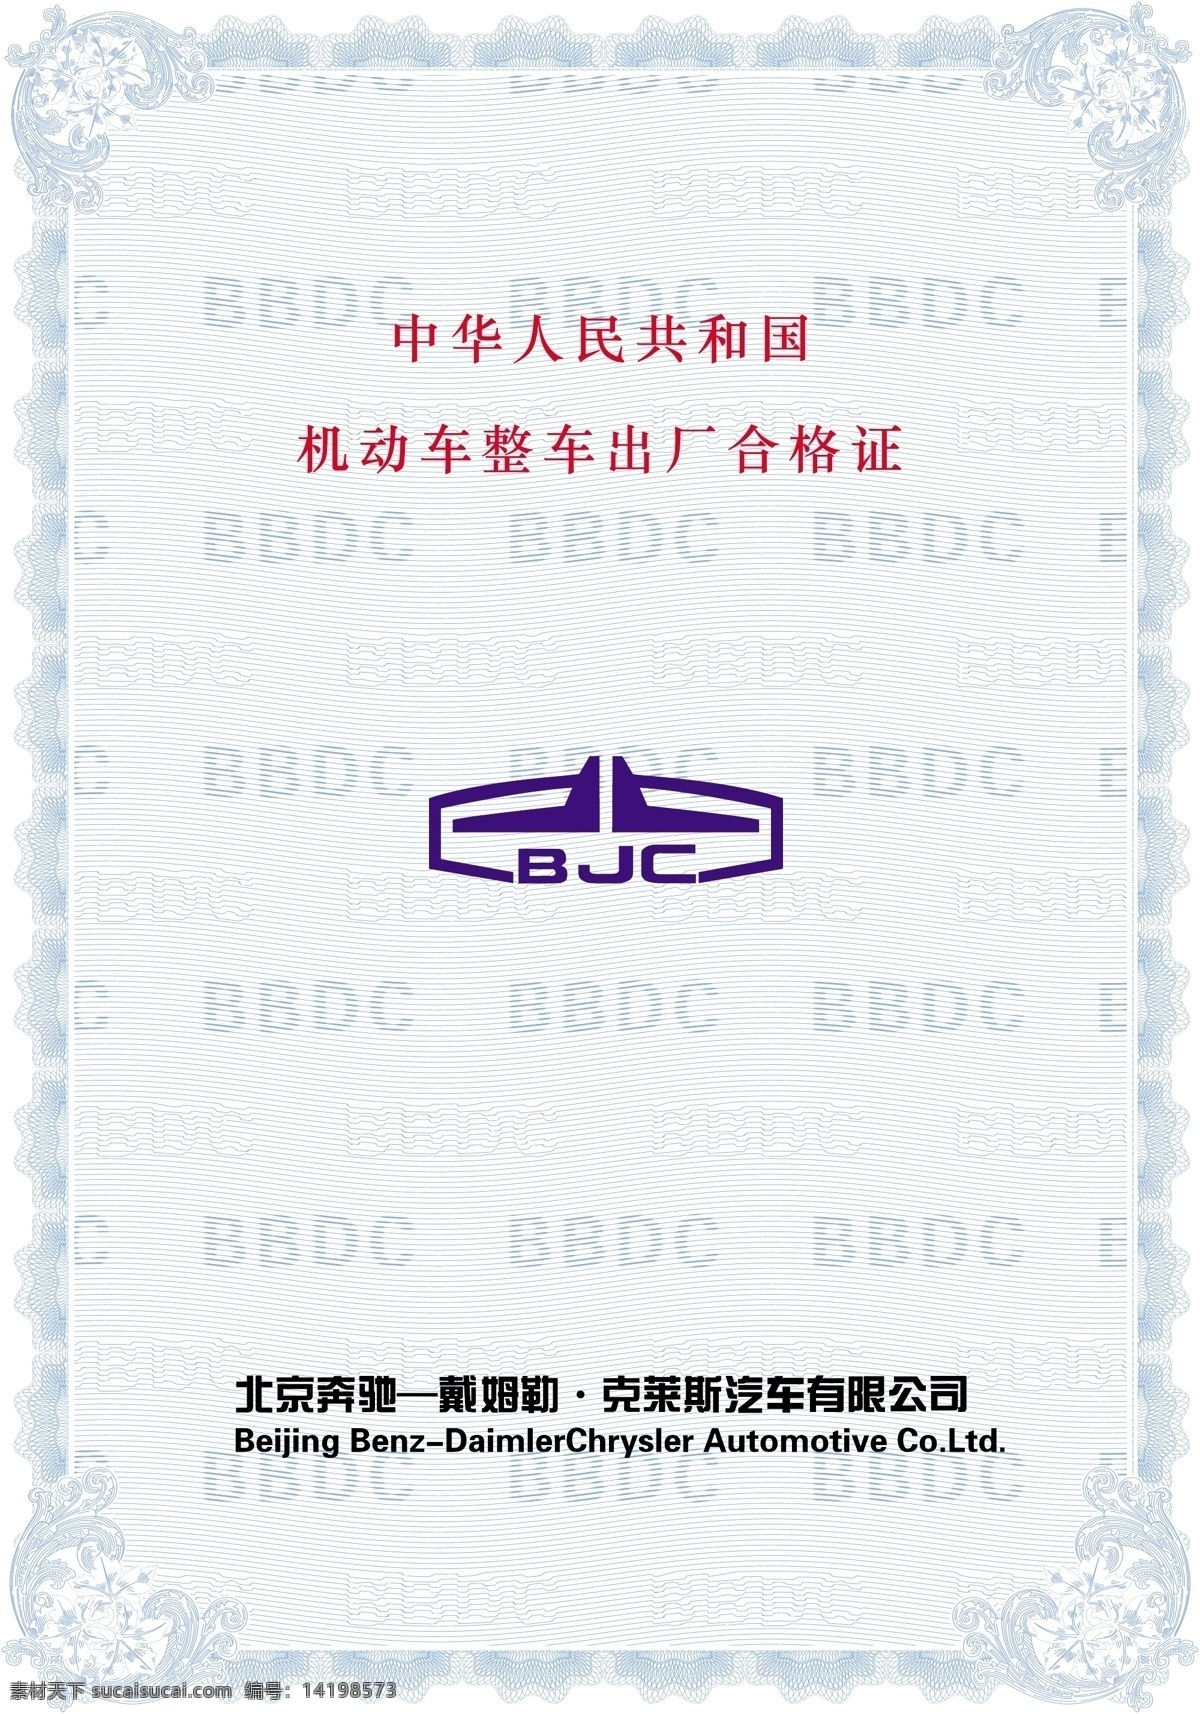 北京 奔驰 机动车 出厂 合格证 防伪合格证 底纹边框 底纹背景 矢量图库